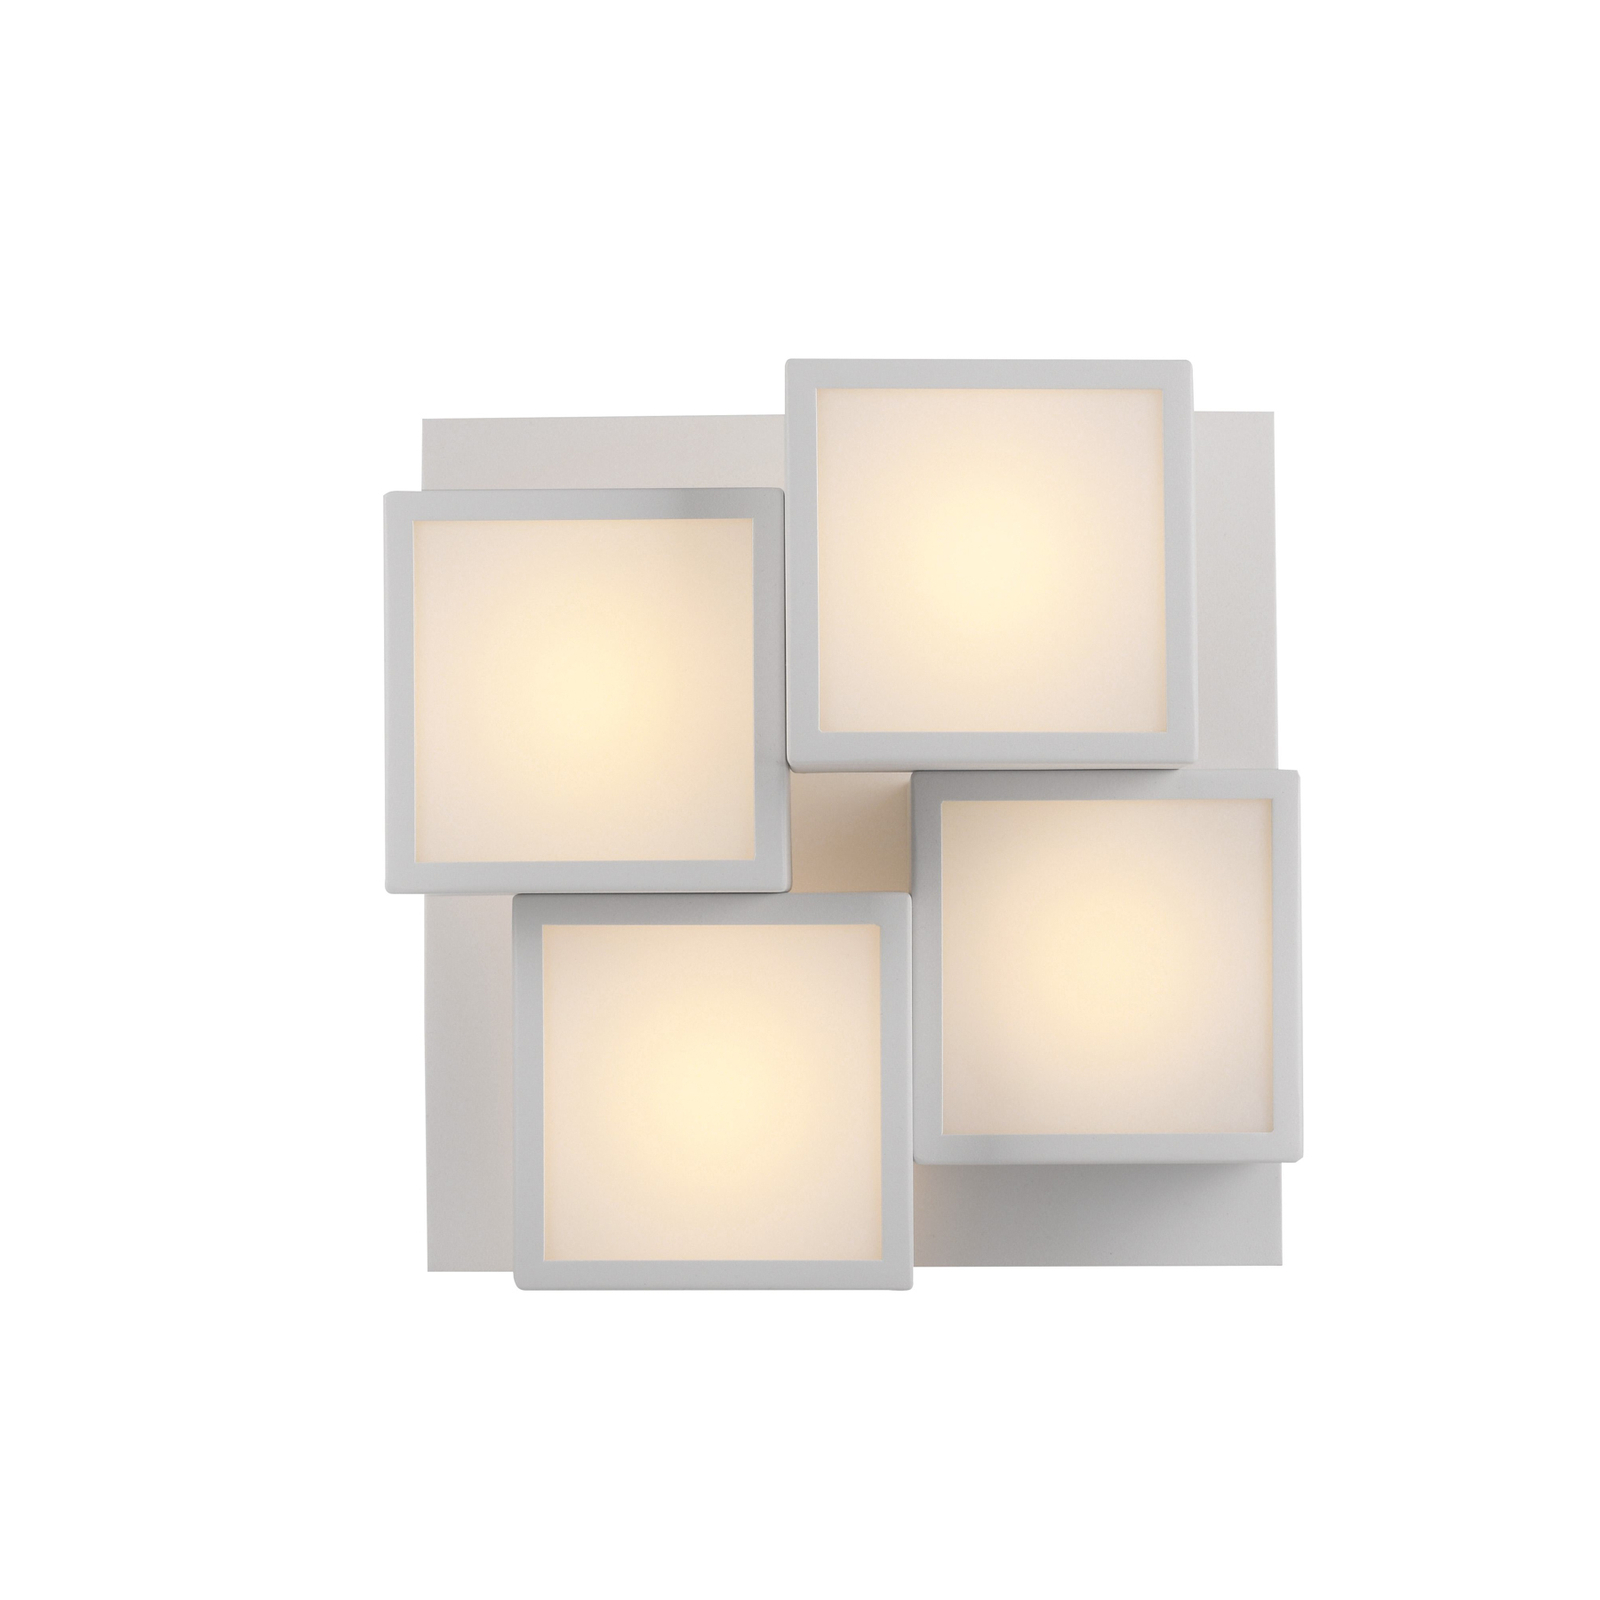 JUST LIGHT. LED mennyezeti lámpa Tetris, vas, 3000 K, fehér